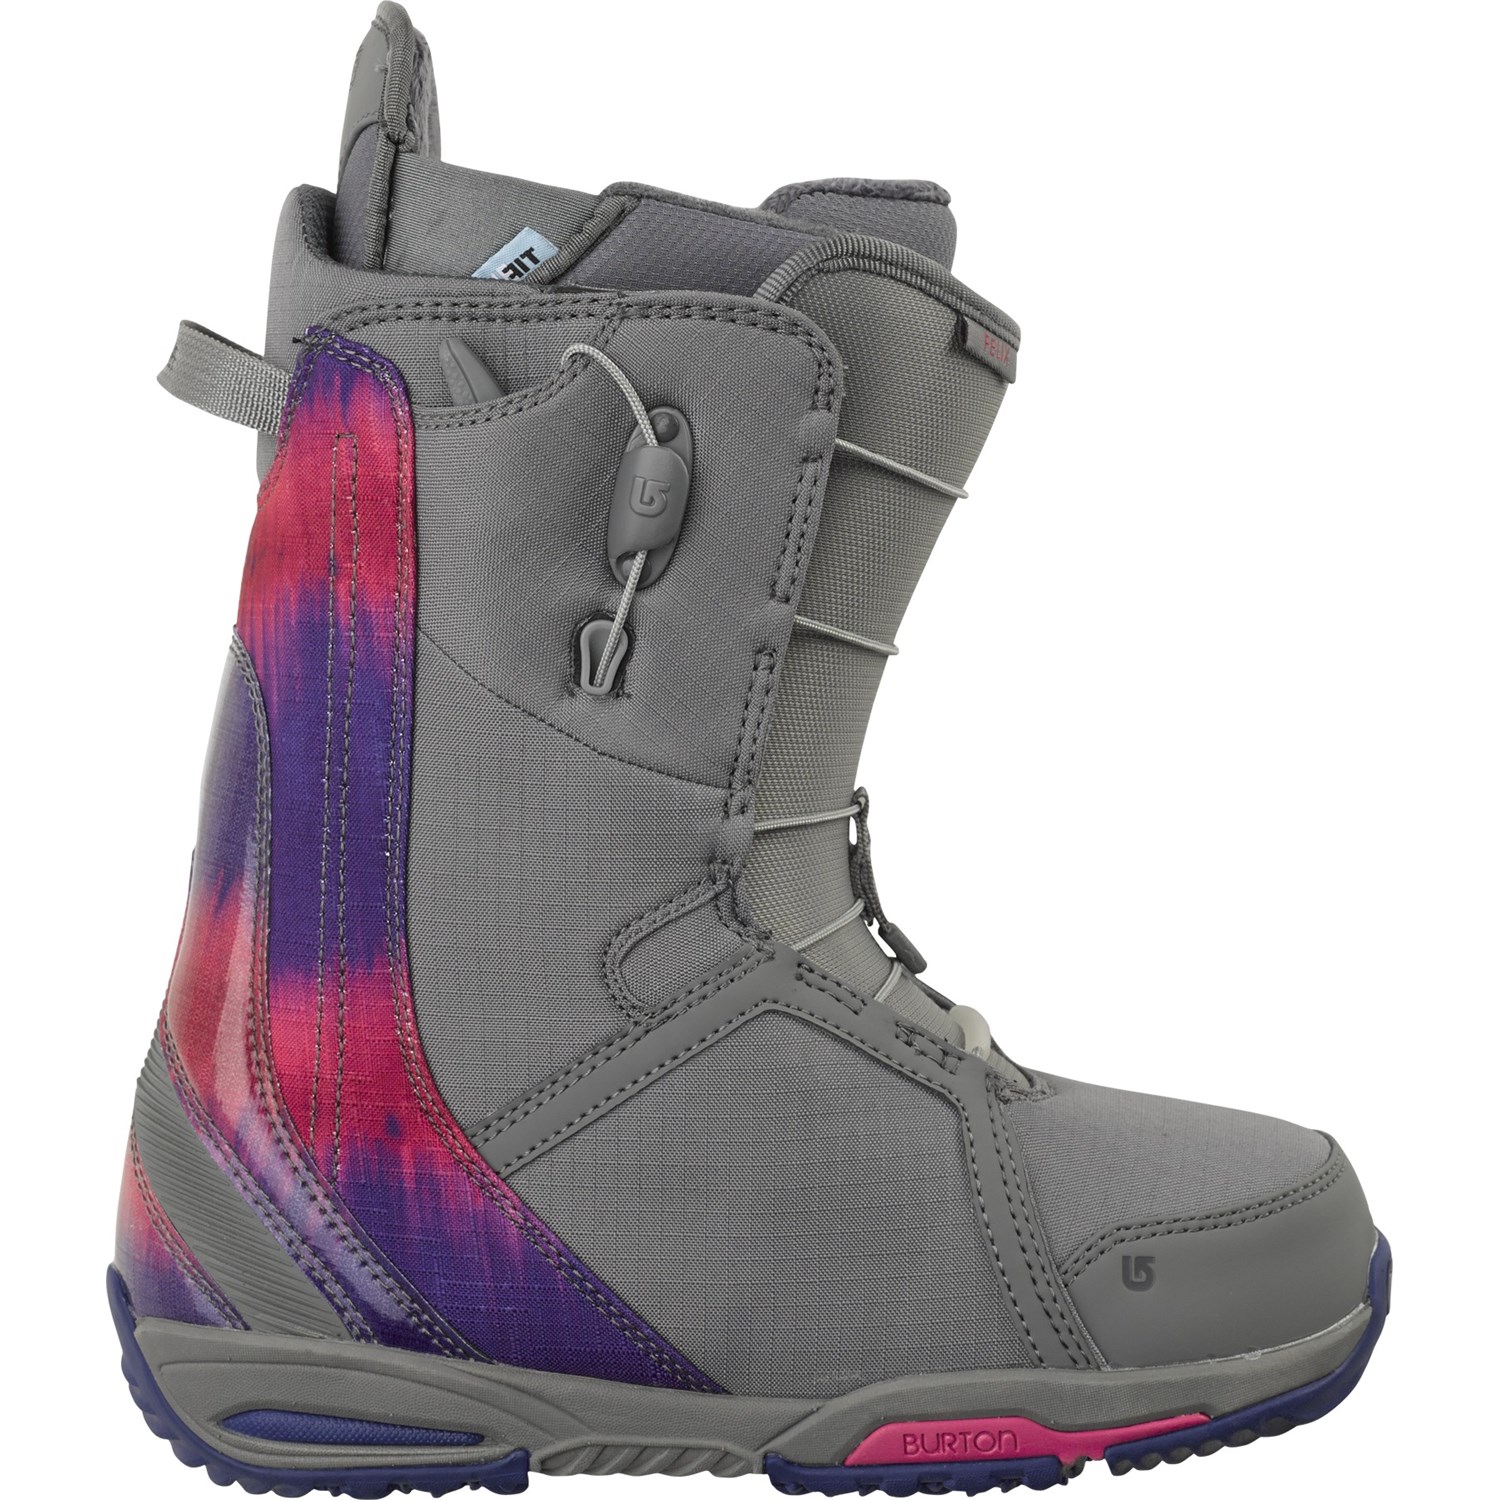 Burton Felix Snowboard Boots - Women's 2014 | evo